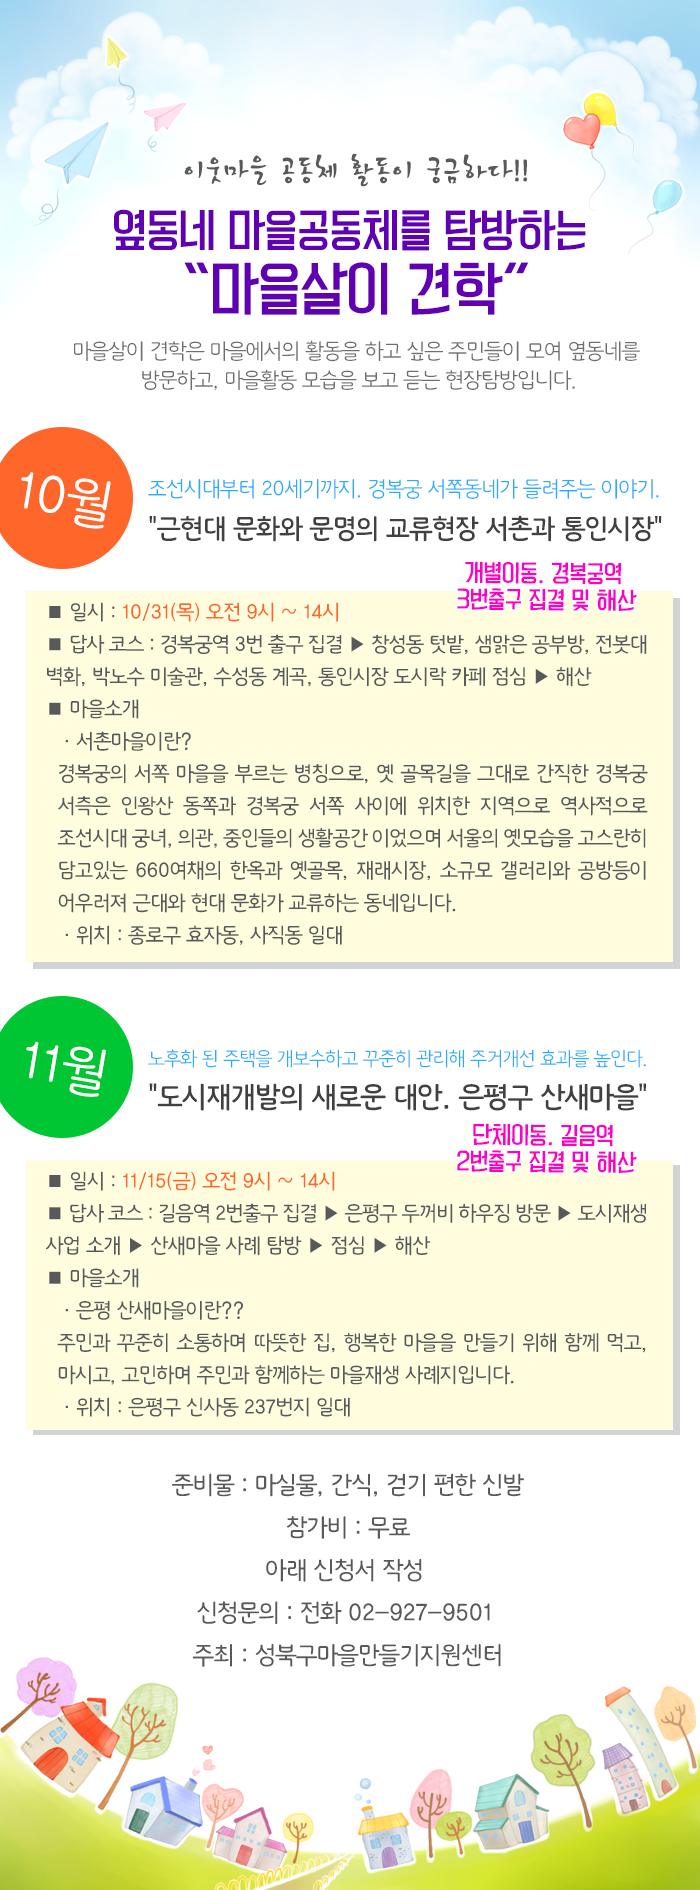 최종-마을살이 견학(10월) (4).jpg